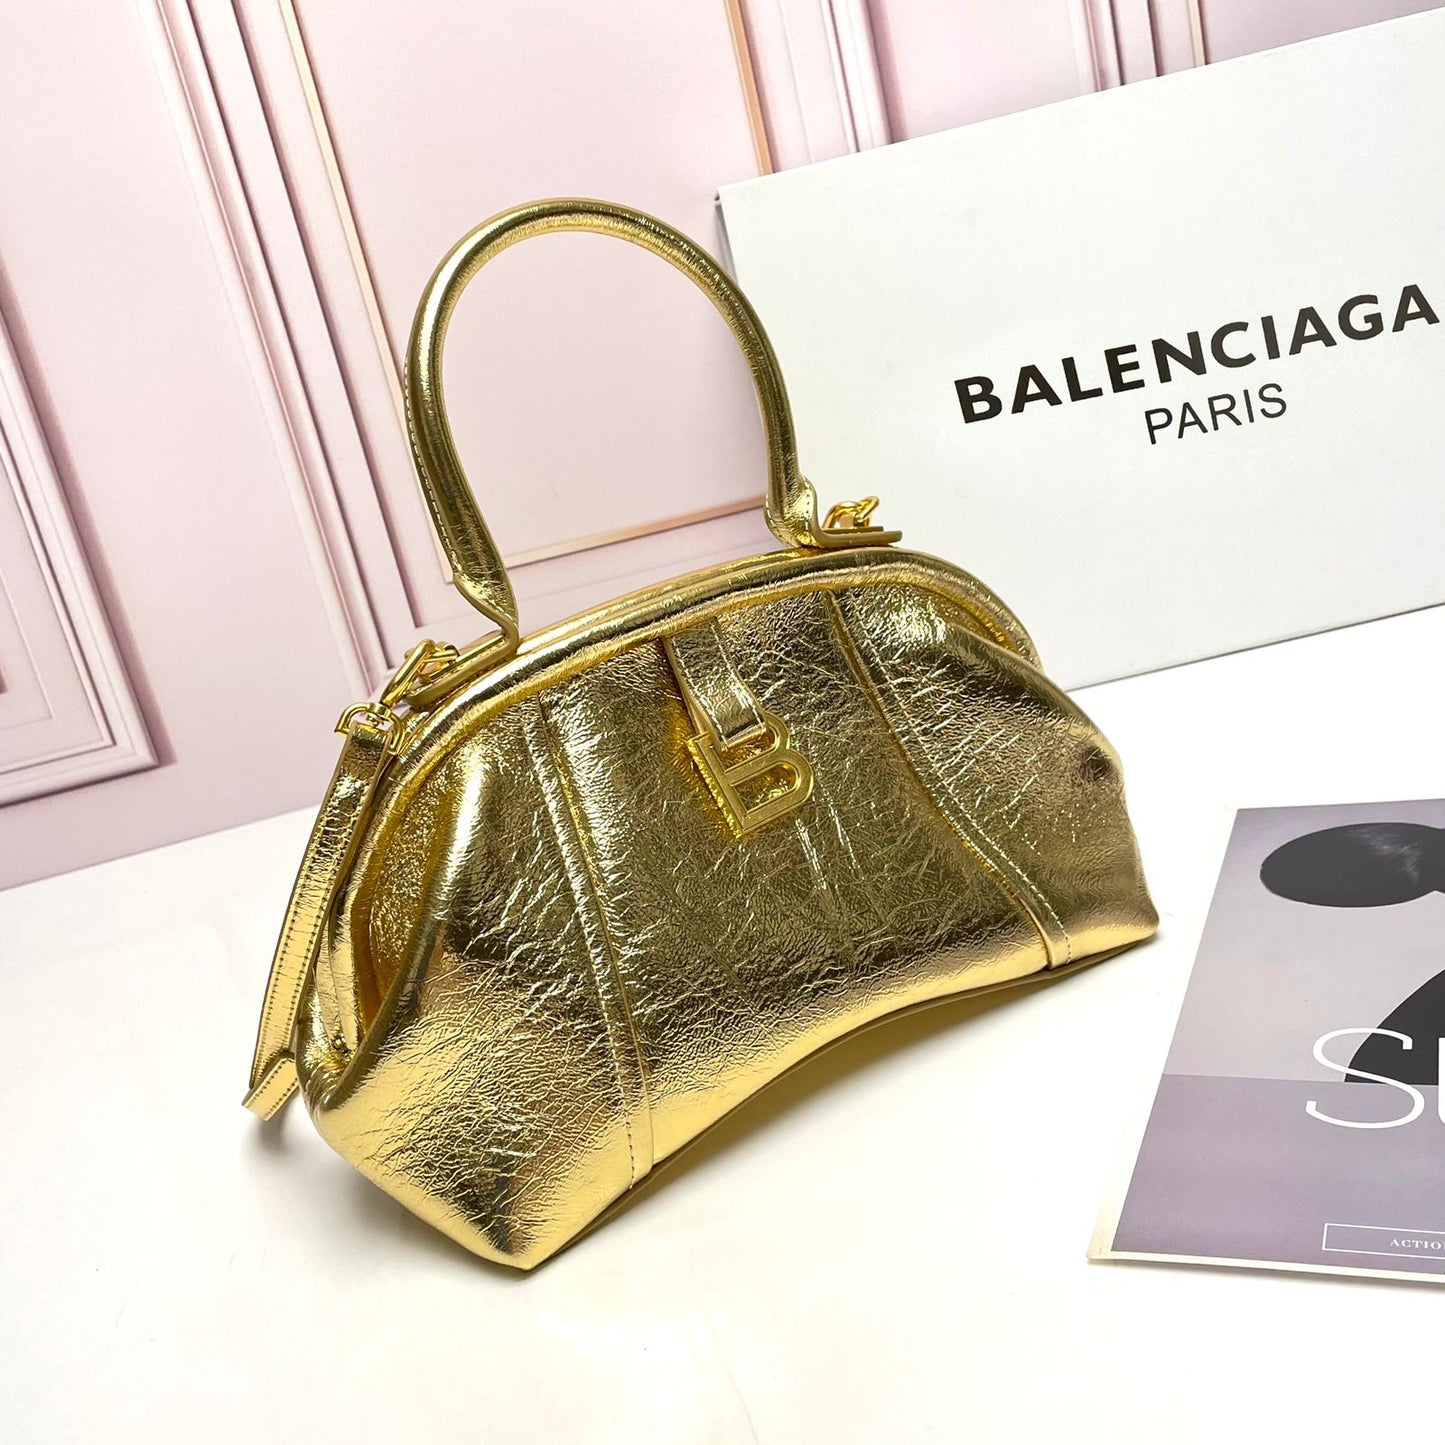 Balenciaga White Small Editor Bag